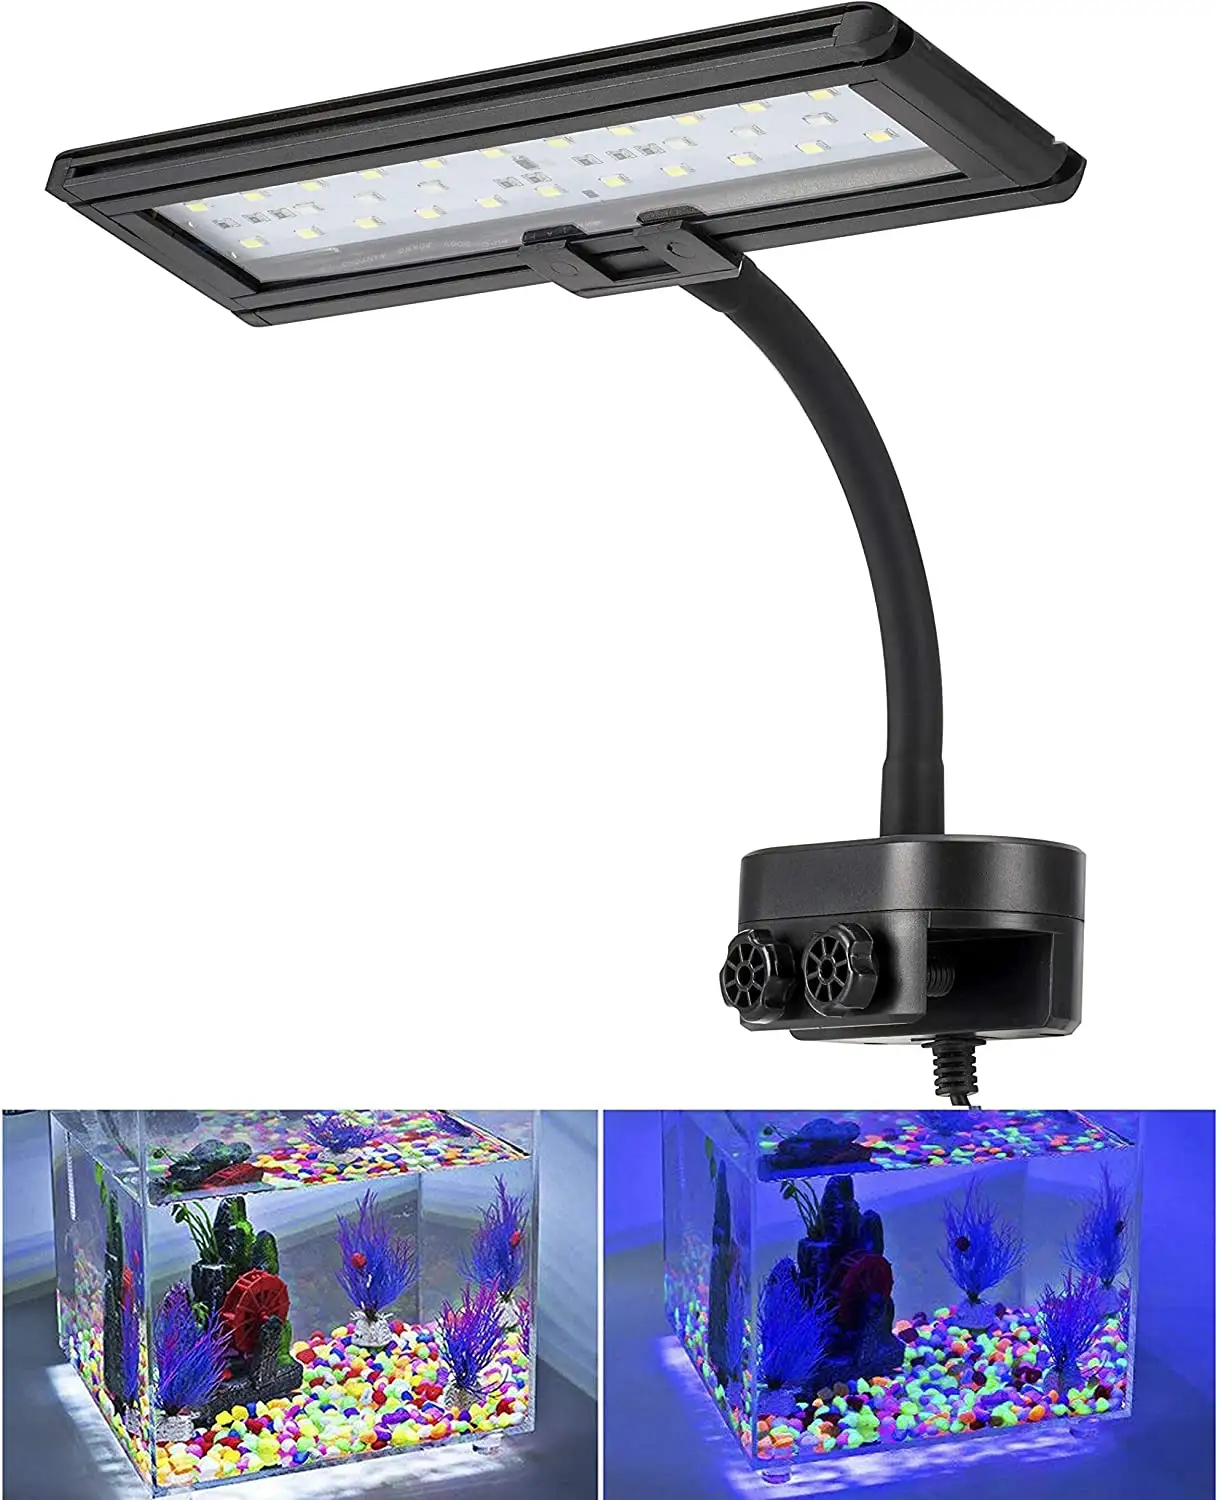 Hygger luz de led para aquário, luz de led azul e branco, braçadeira de pescoço de cisne, para água salgada, tanque de água doce, iluminação de led para aquário